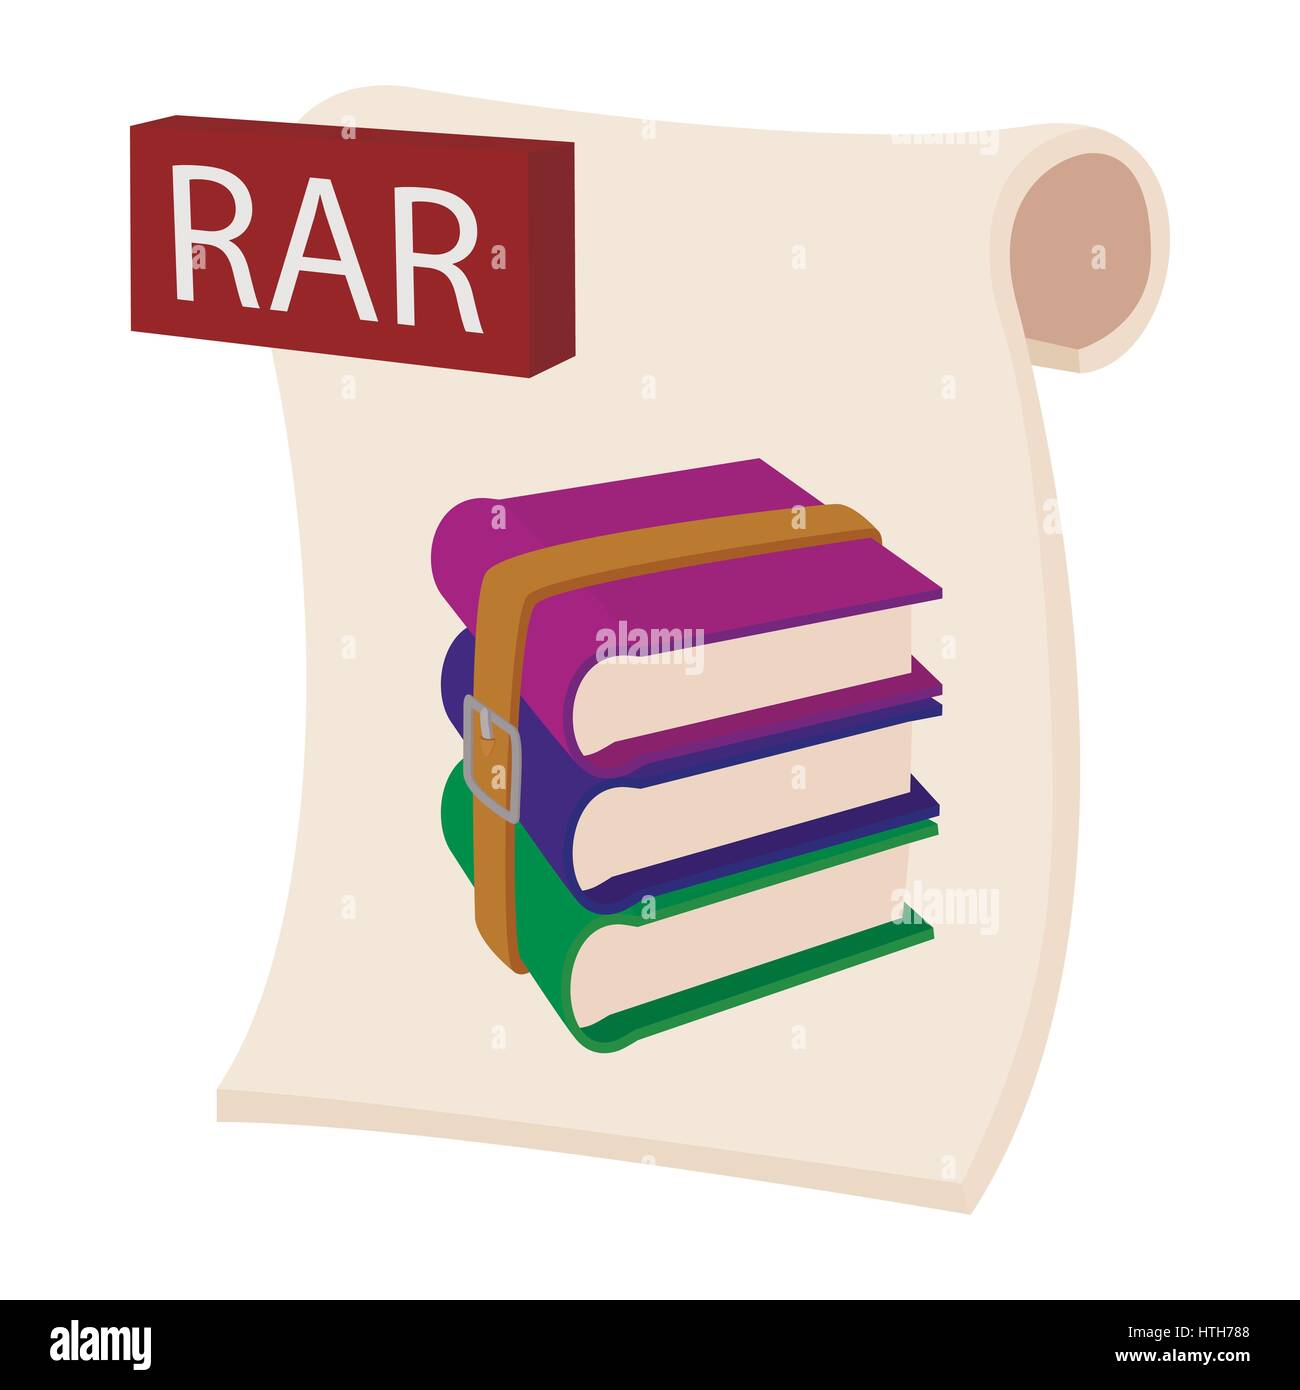 RAR file icon, cartoon style  Stock Vector